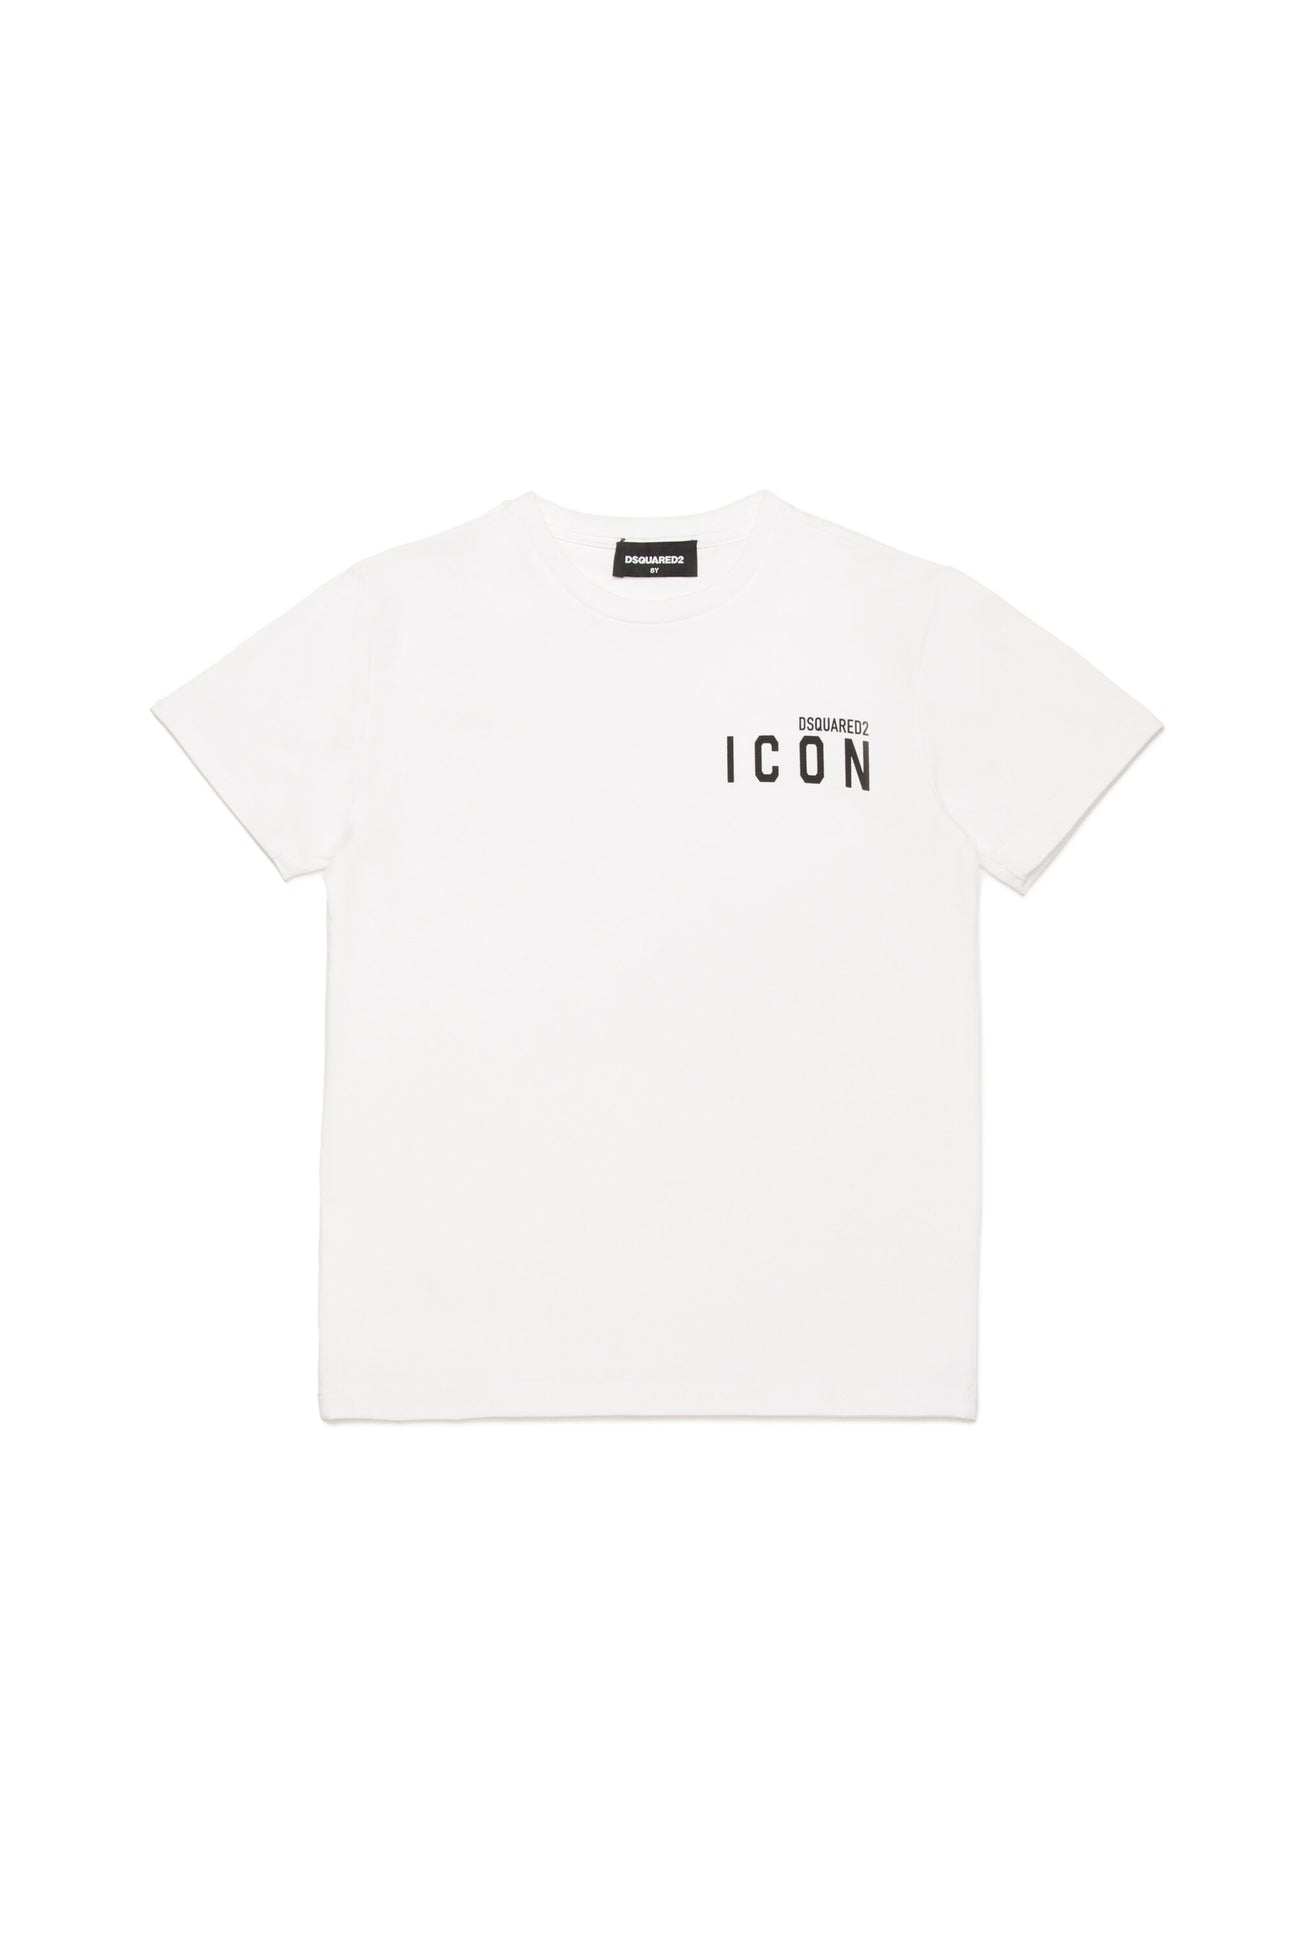 ICON branded underwear T-shirt 